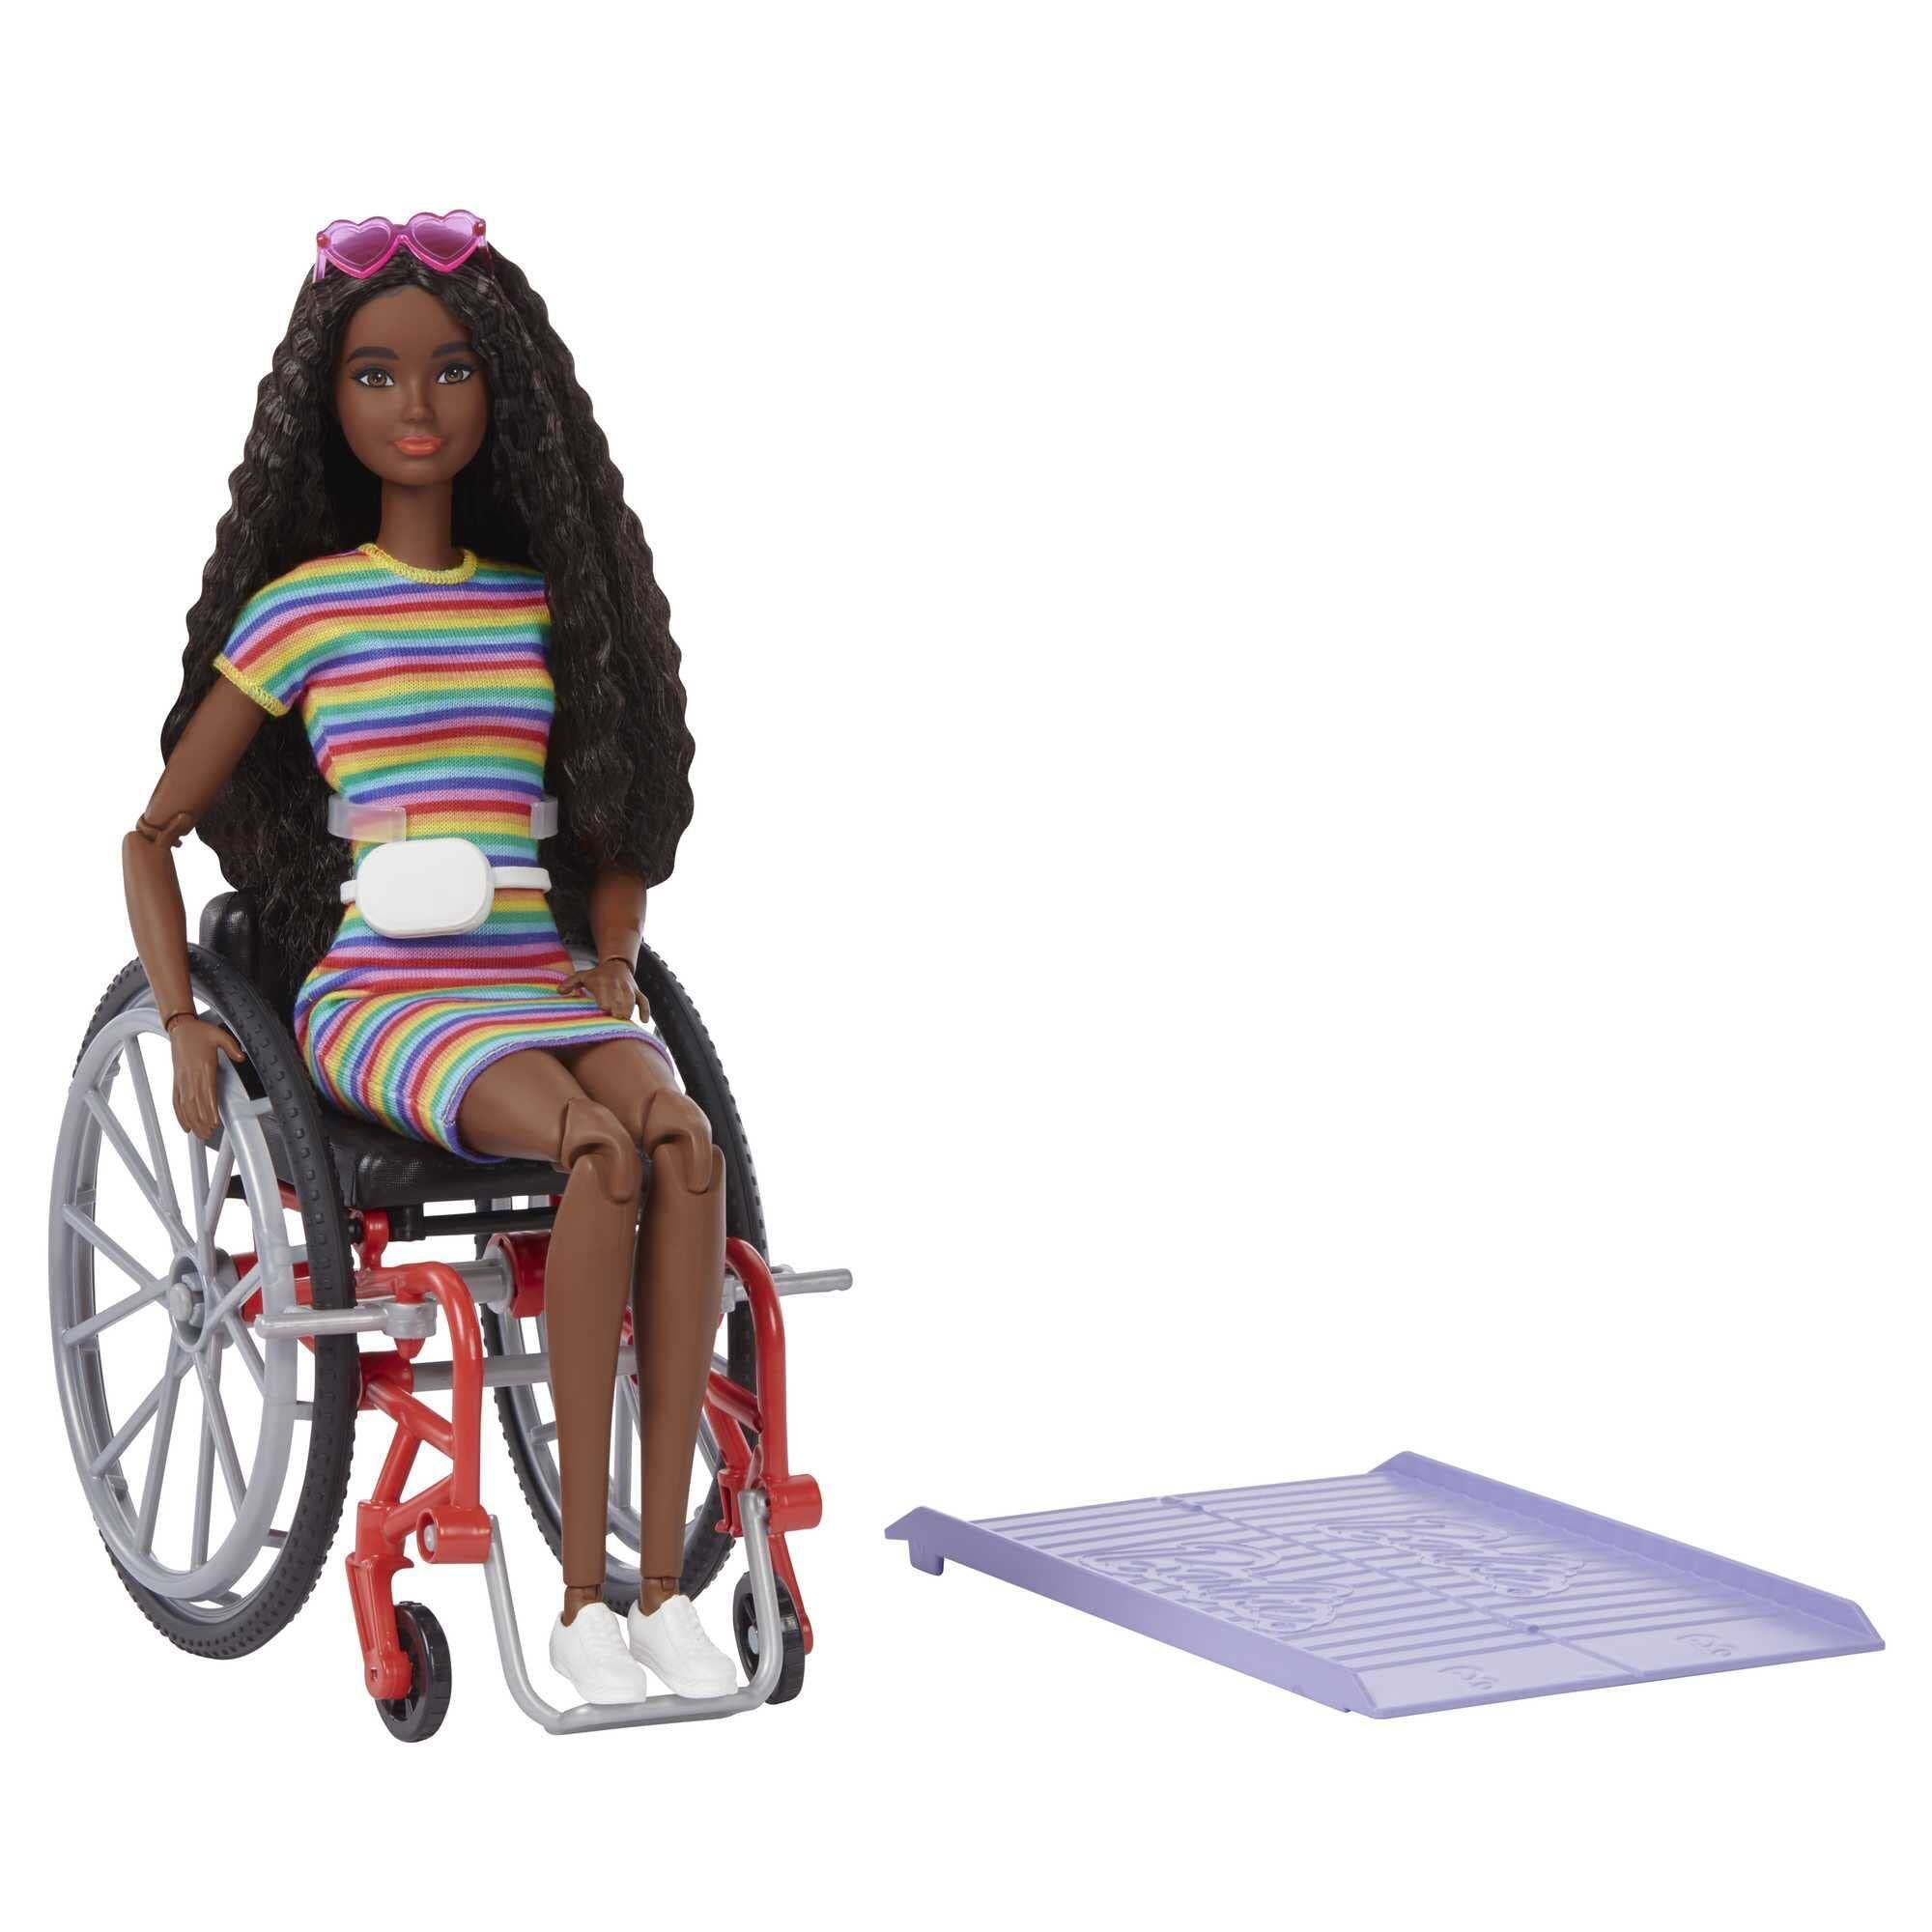 Mattel lanzó en 2019 su Barbie negra en silla de ruedas.